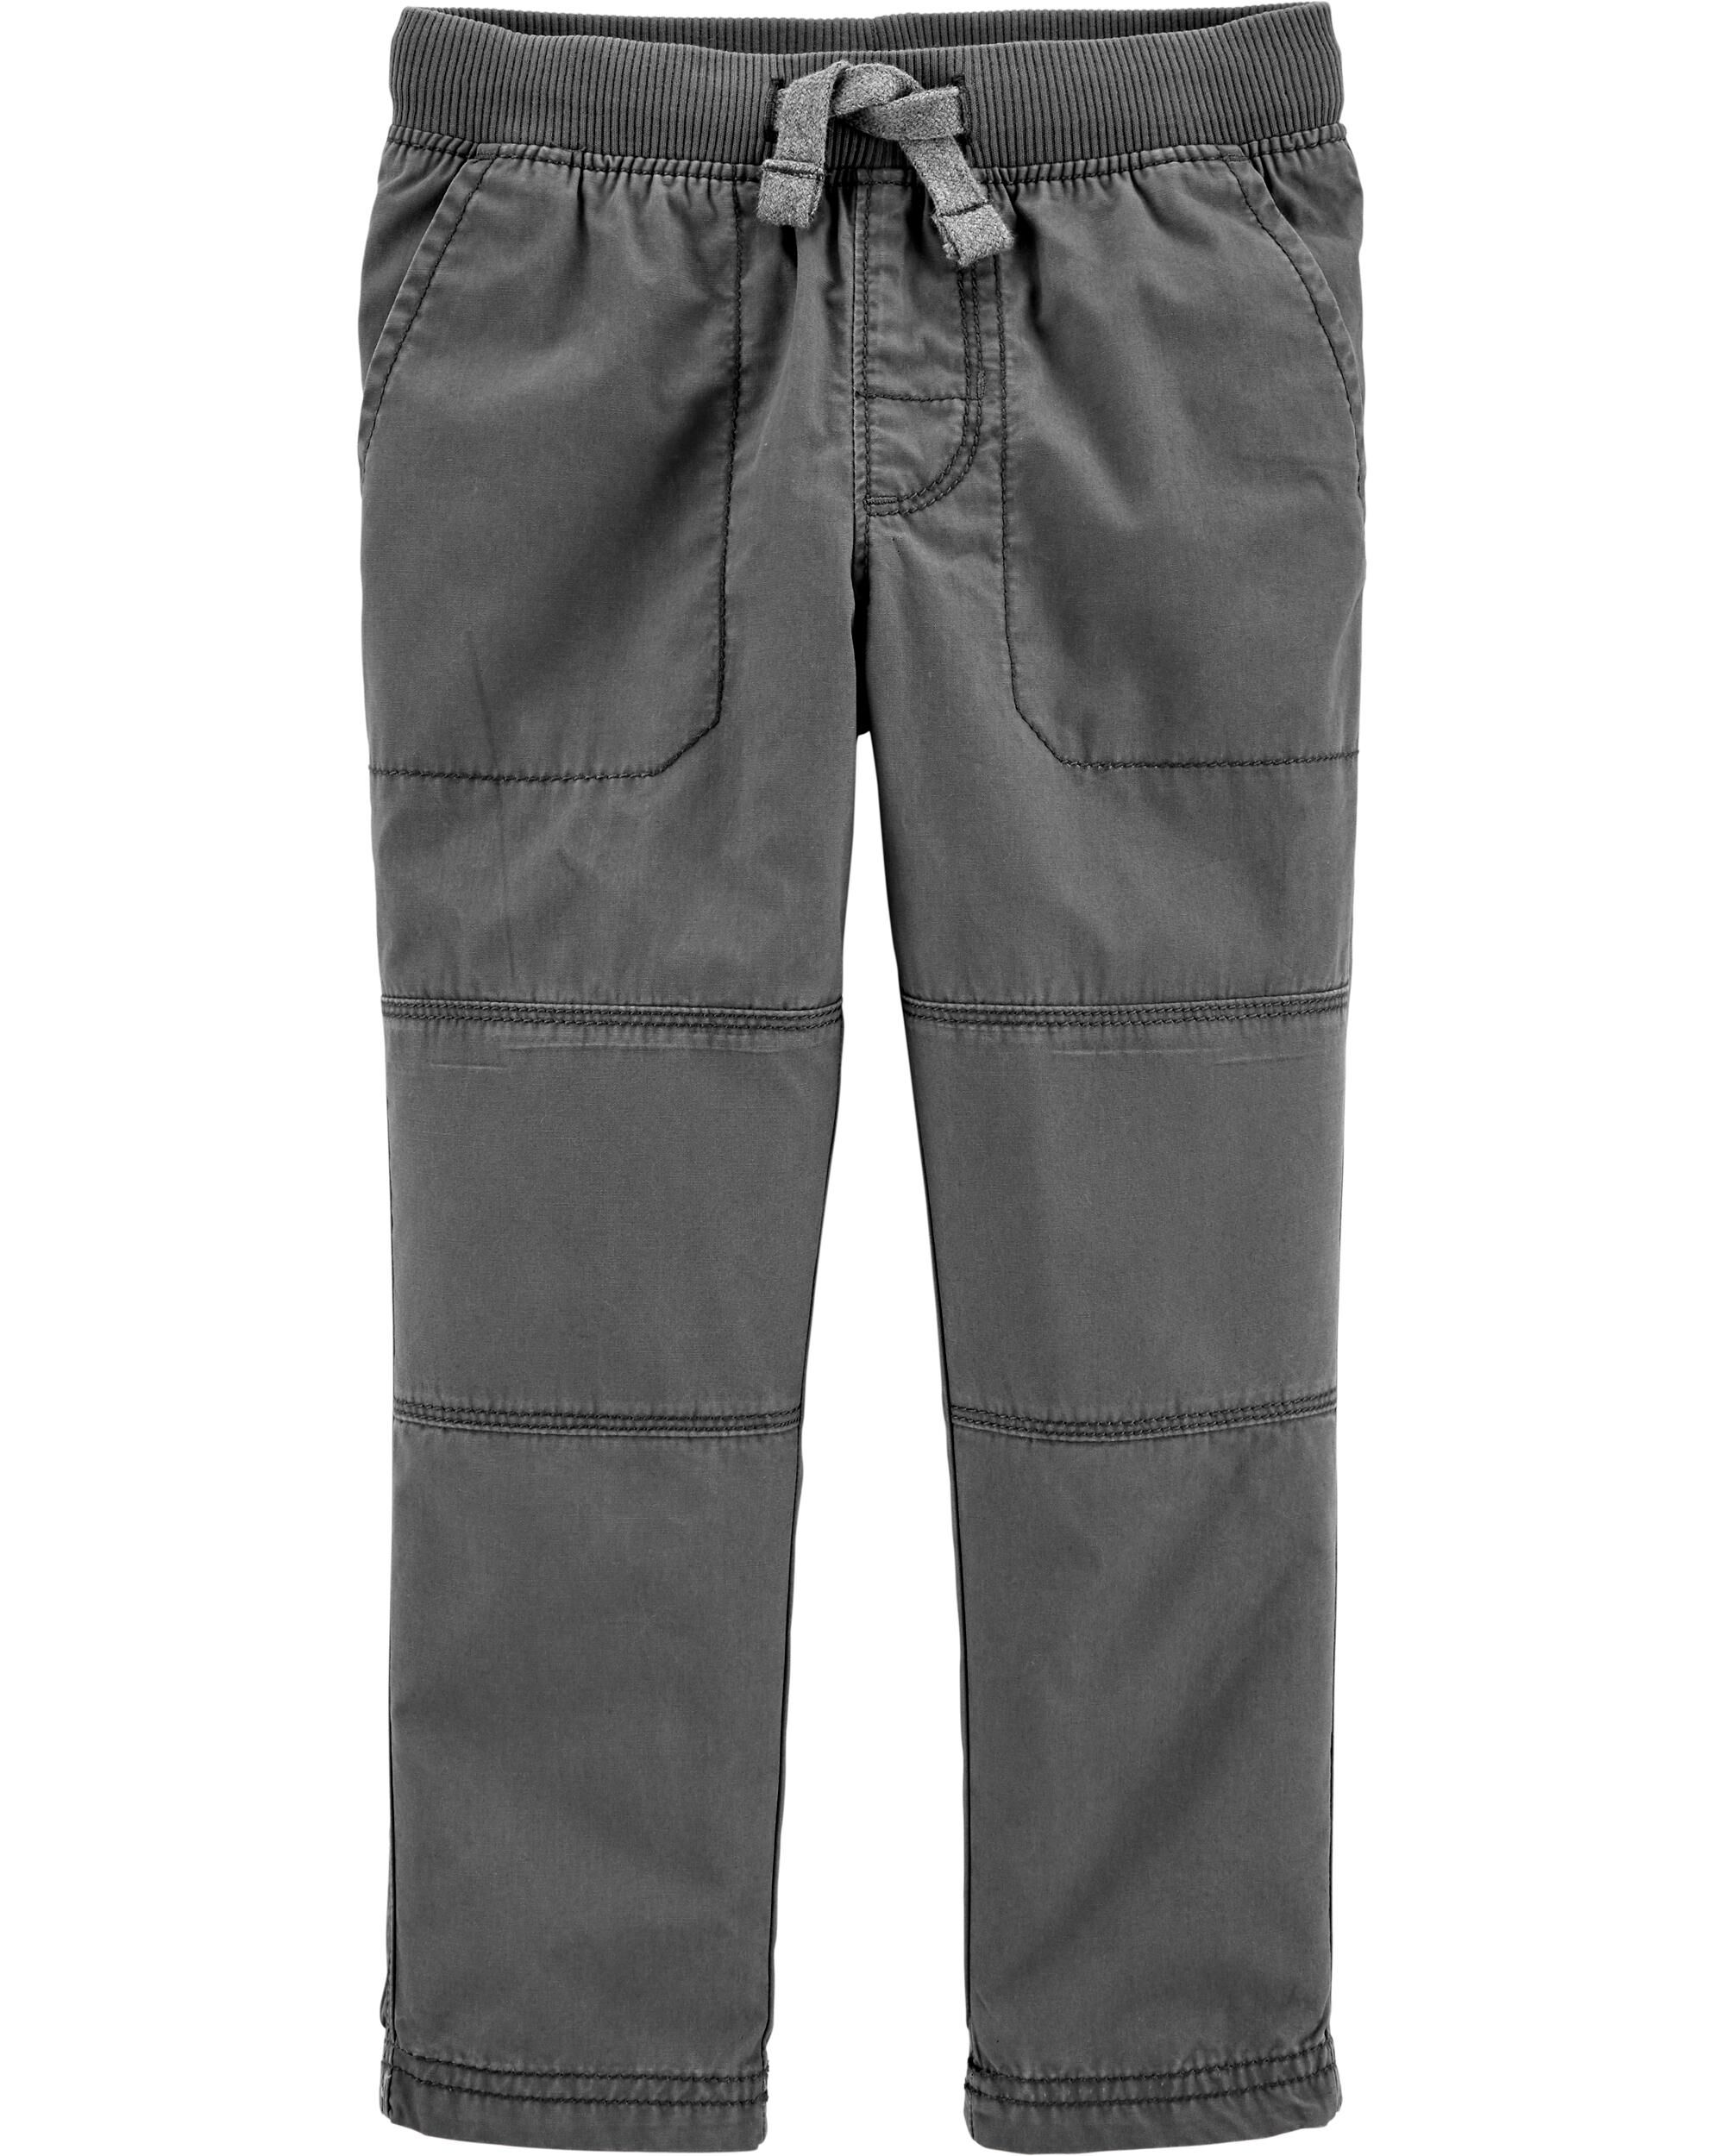 Buy Grey Reinforced Knees Trousers 2 Pack 3 years  School trousers  Argos